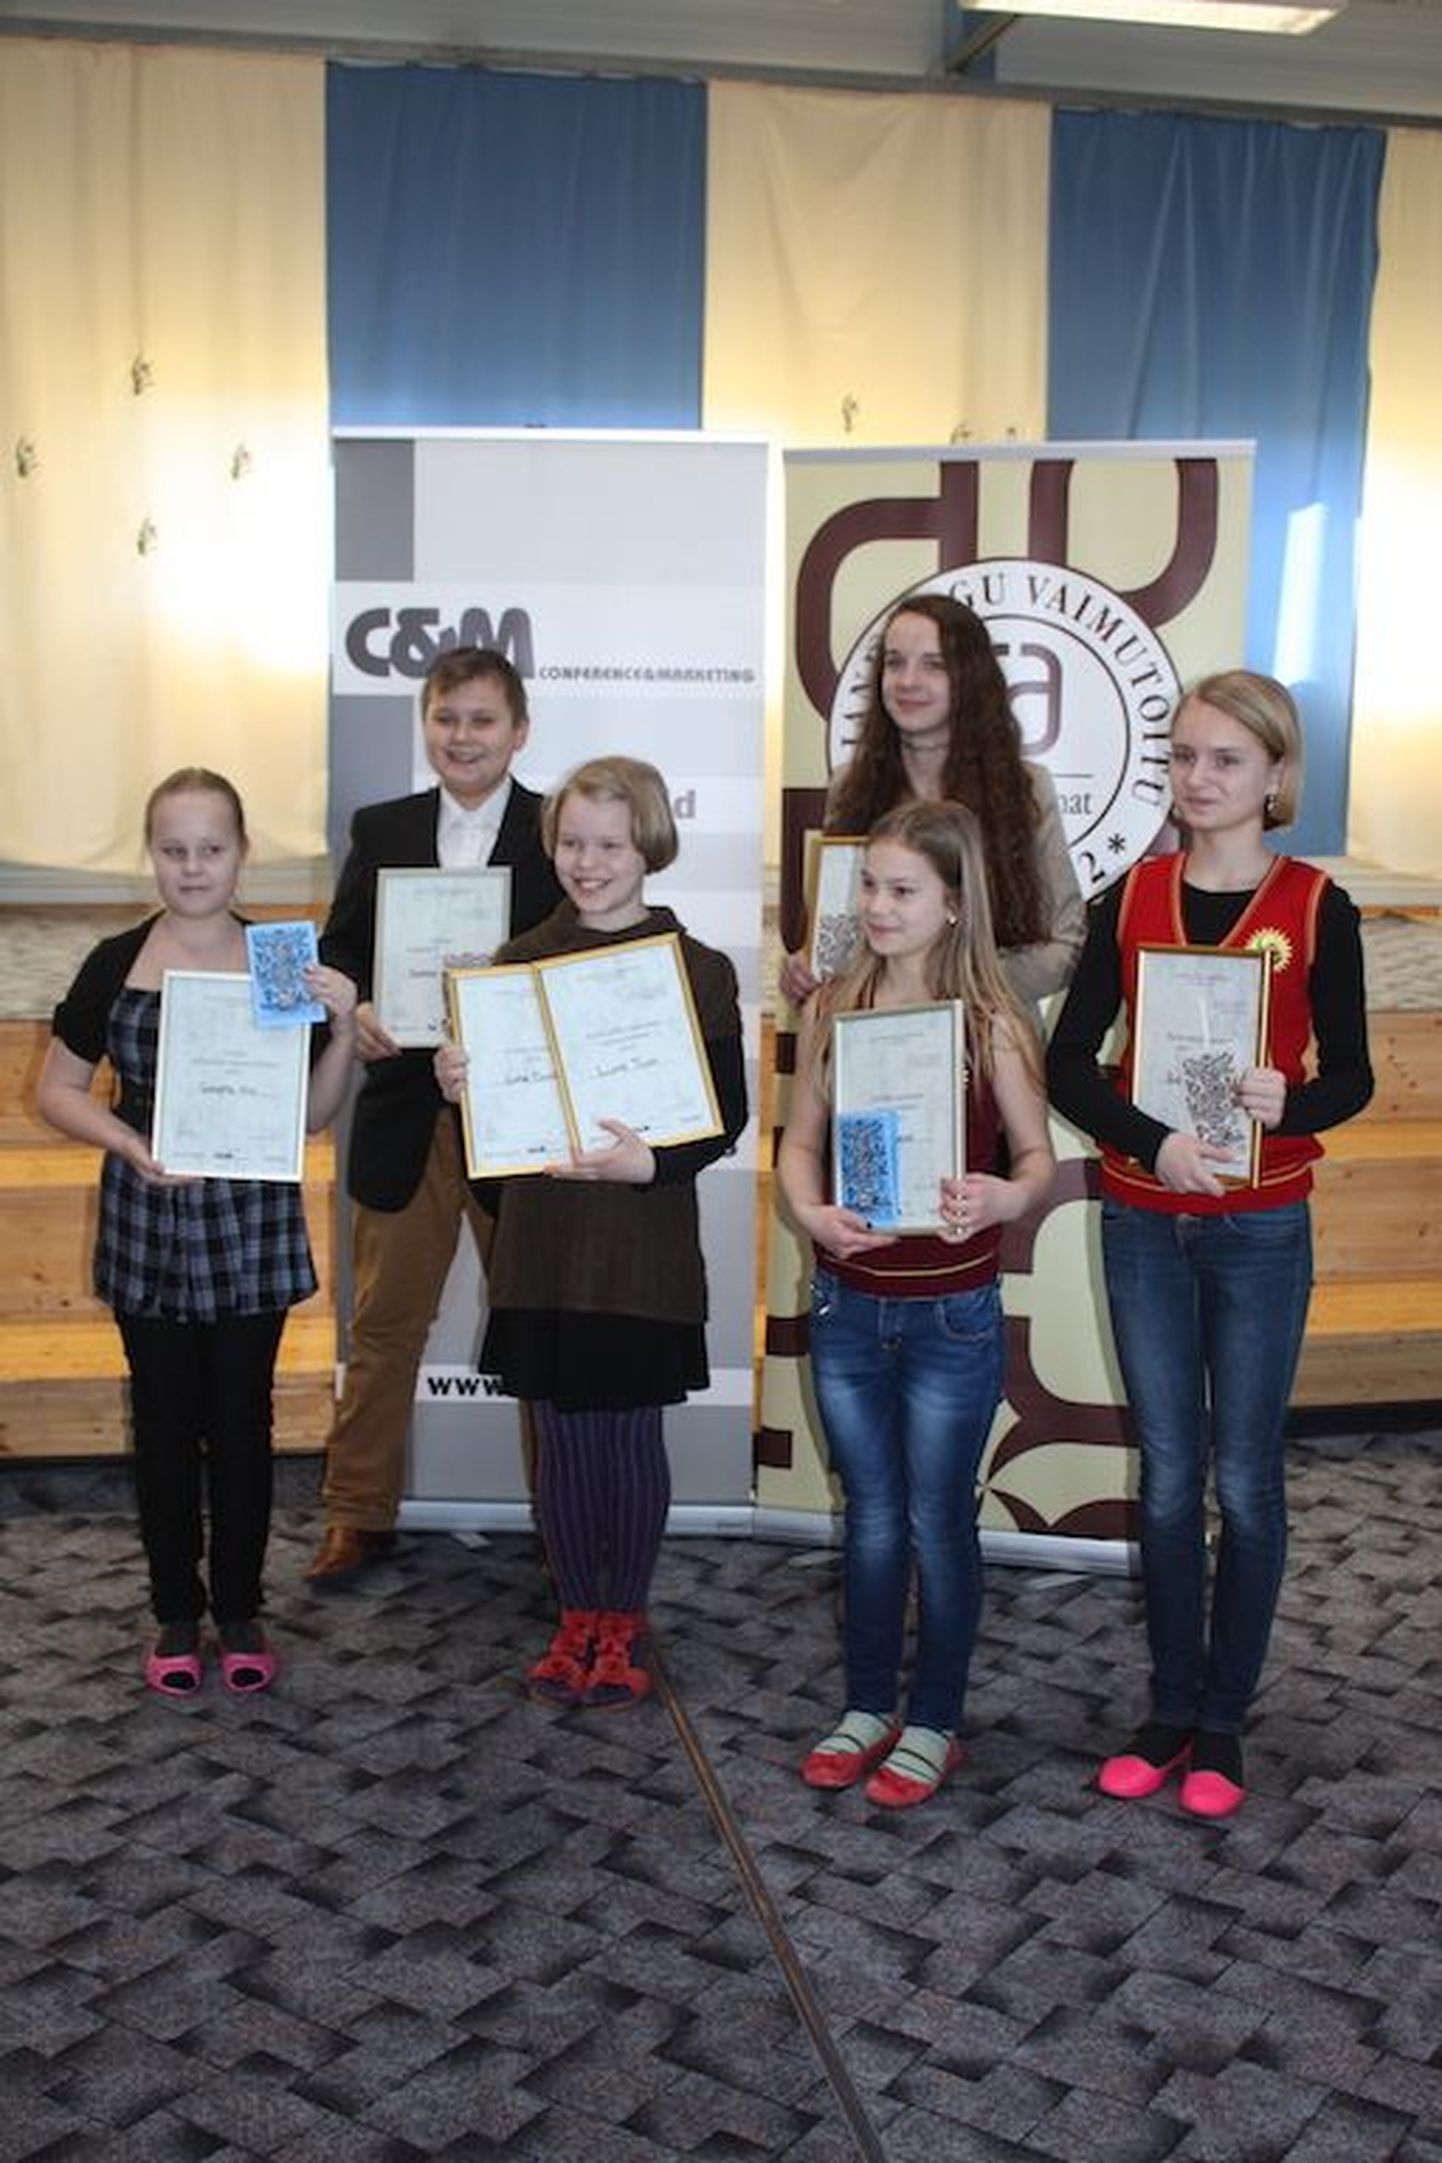 Auhinnatud võistlejad Greete Viik (vasakult), Sergo Lanno, Lume Tuum, Katariina Viik, Anne Ojaste ja Eneli Juhansoo.